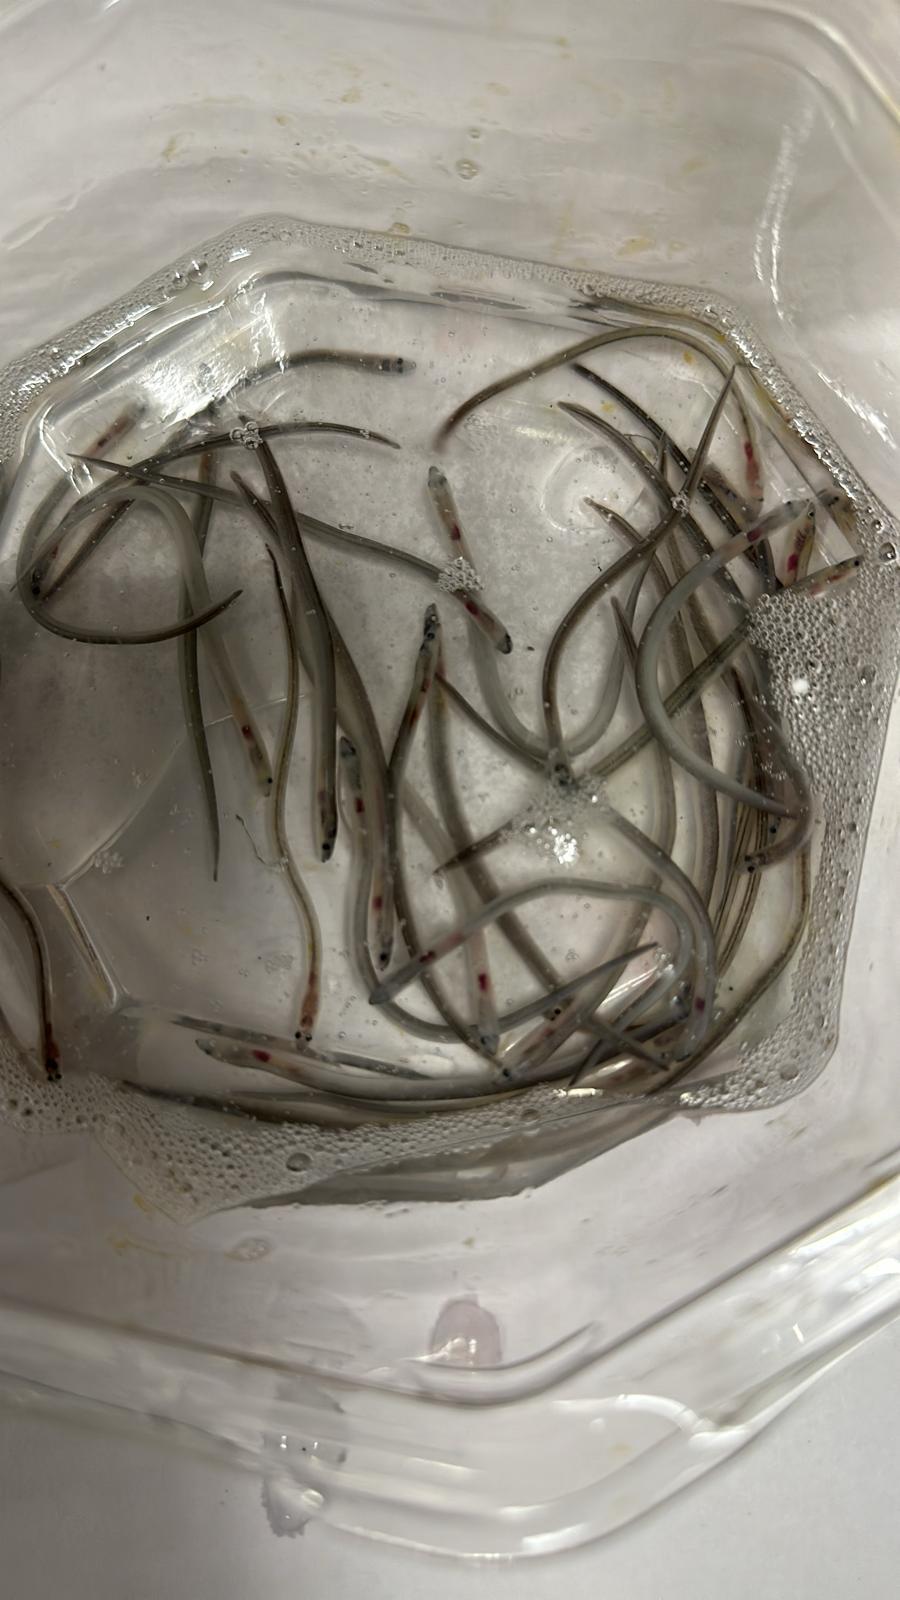 漁農自然護理署昨日（三月十四日）在香港國際機場檢取53公斤鰻魚苗，當中包括受管制的品種。圖示部分檢取的歐洲鰻鱺魚苗。